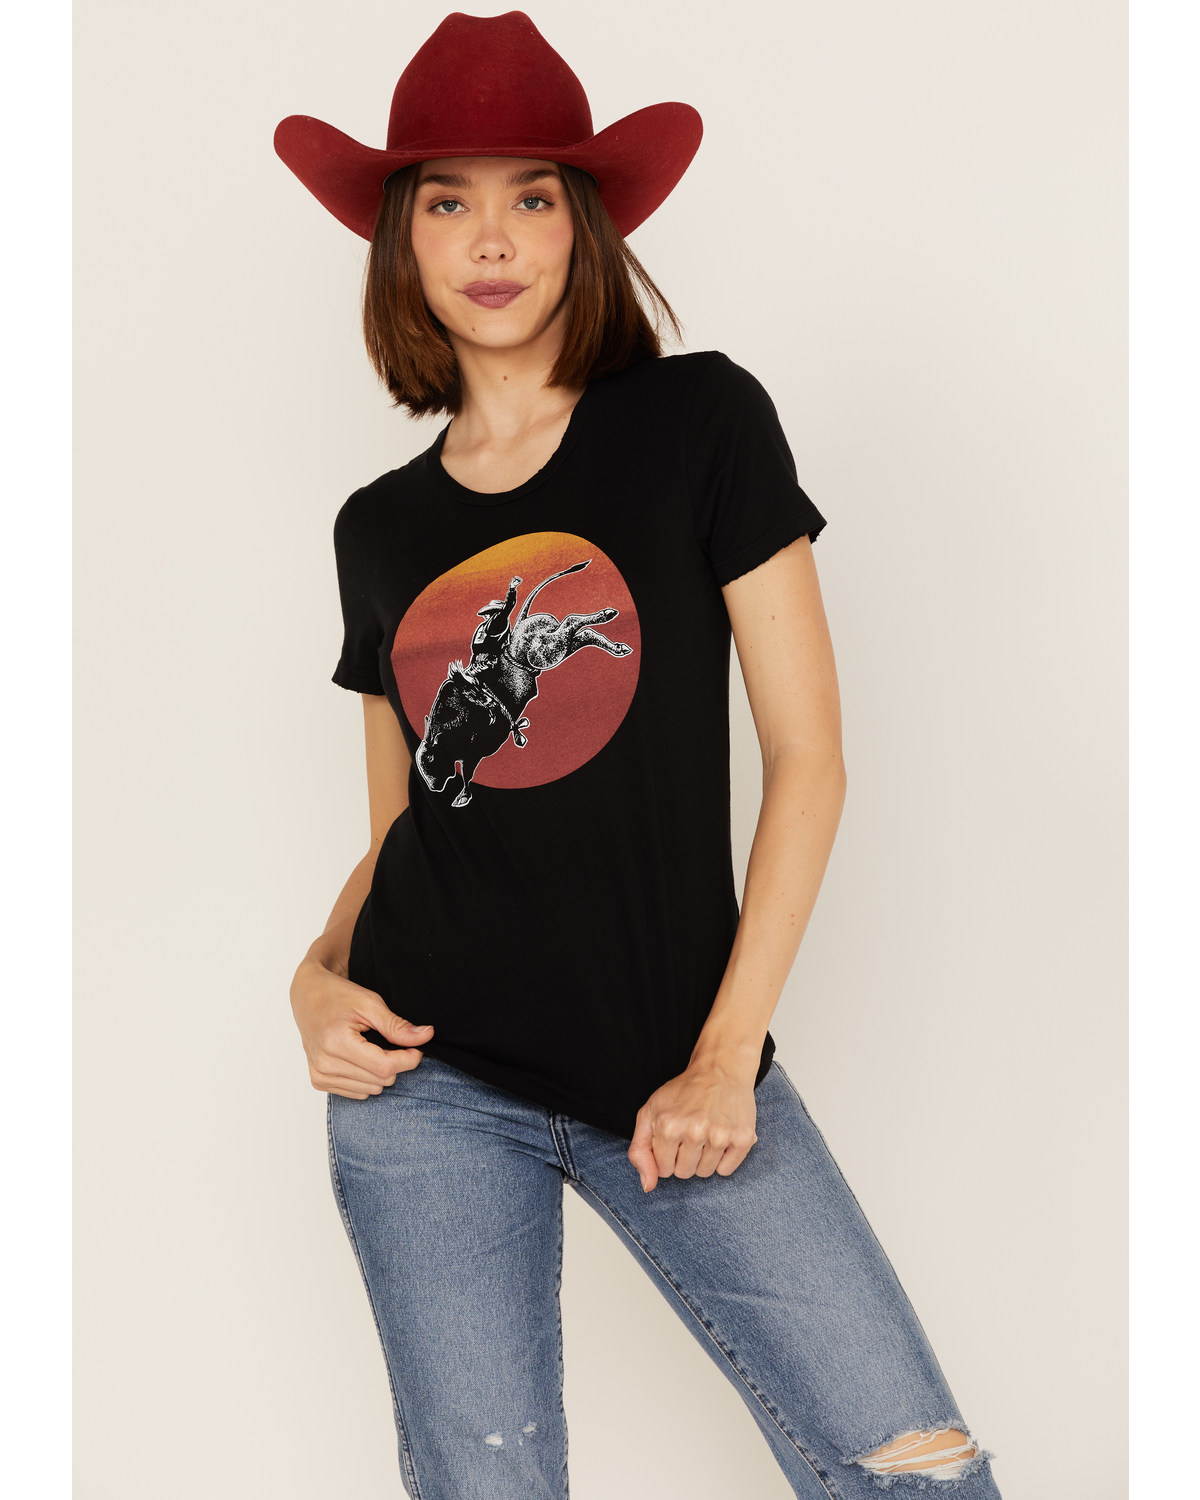 Bandit Women's Sunset Bull Rider Graphic Tee